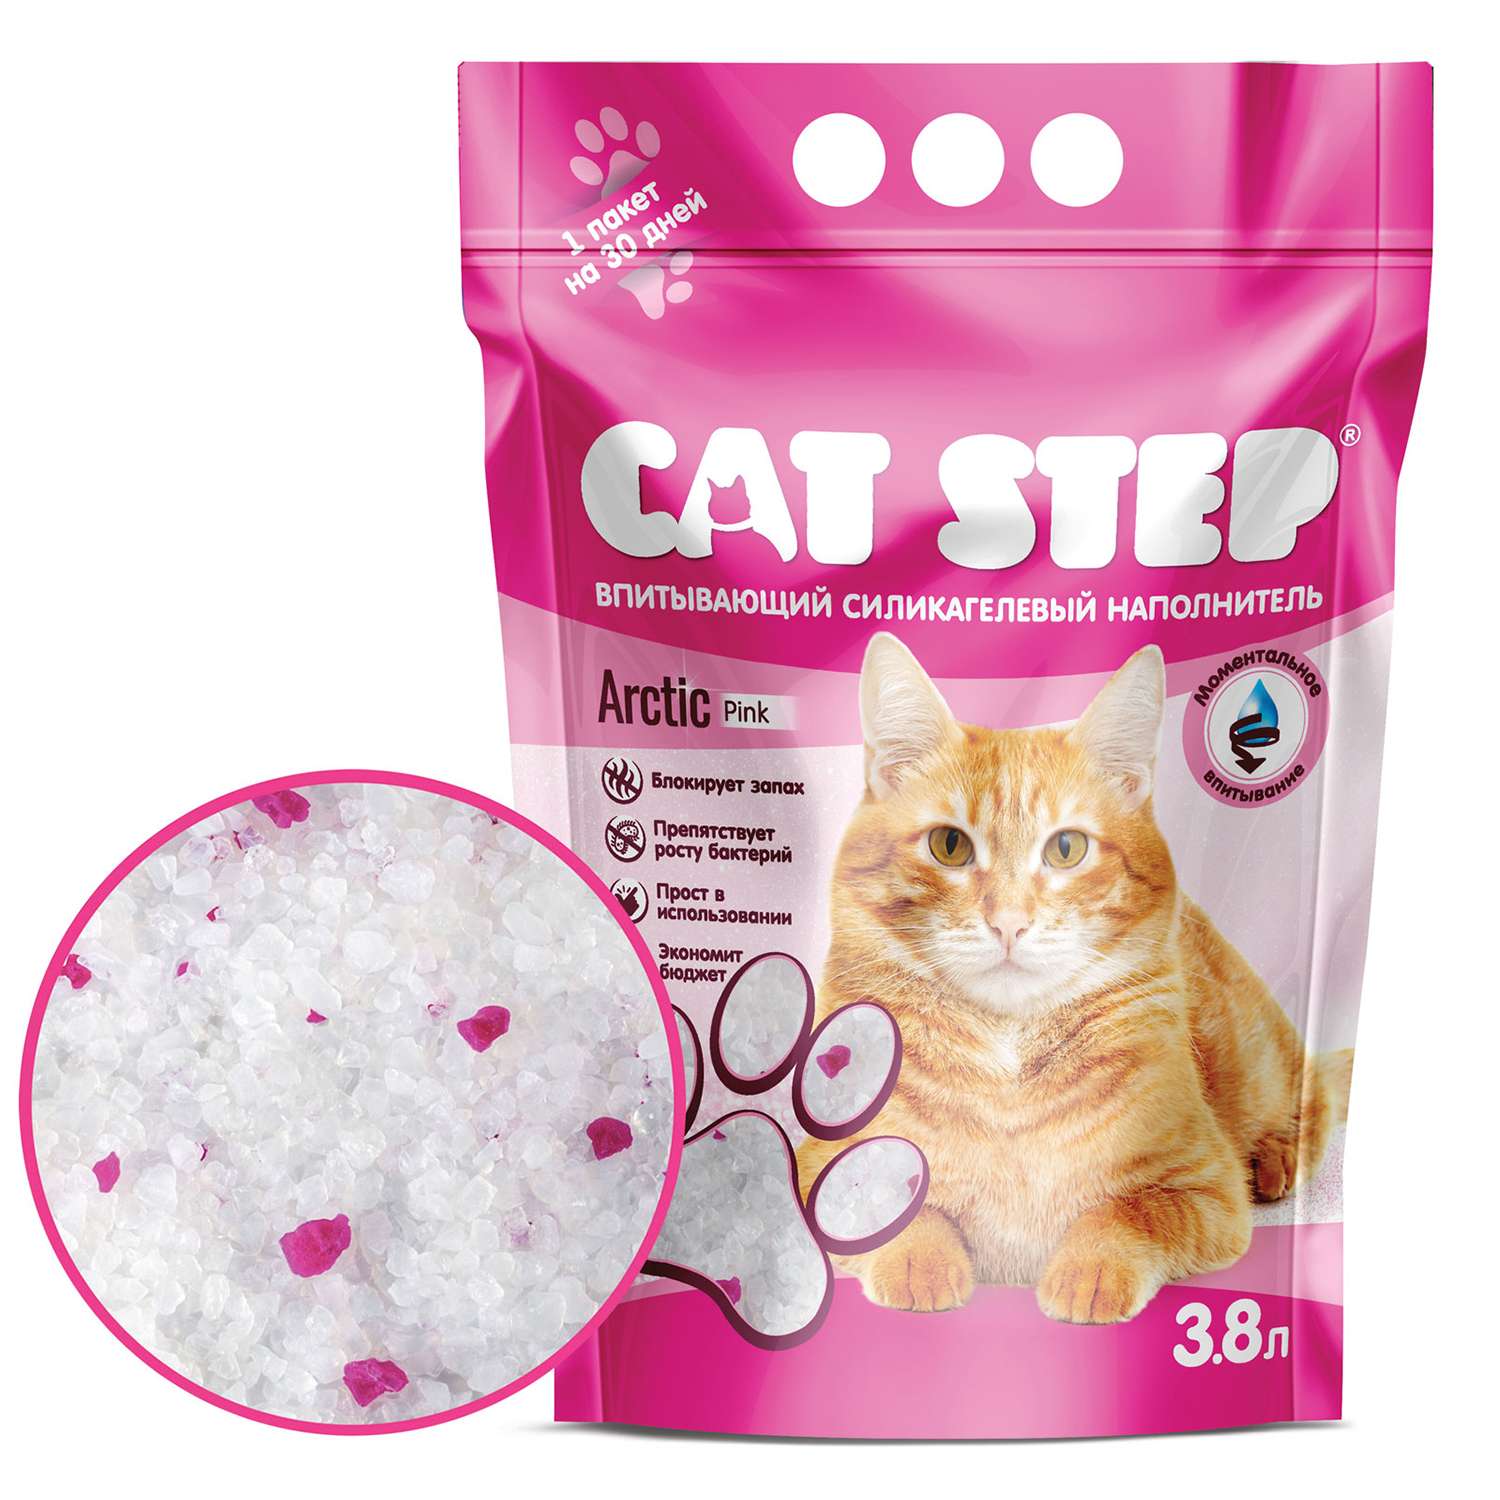 Наполнитель для кошек Cat Step Crystal Pink впитывающий силикагелевый 3.8л - фото 1